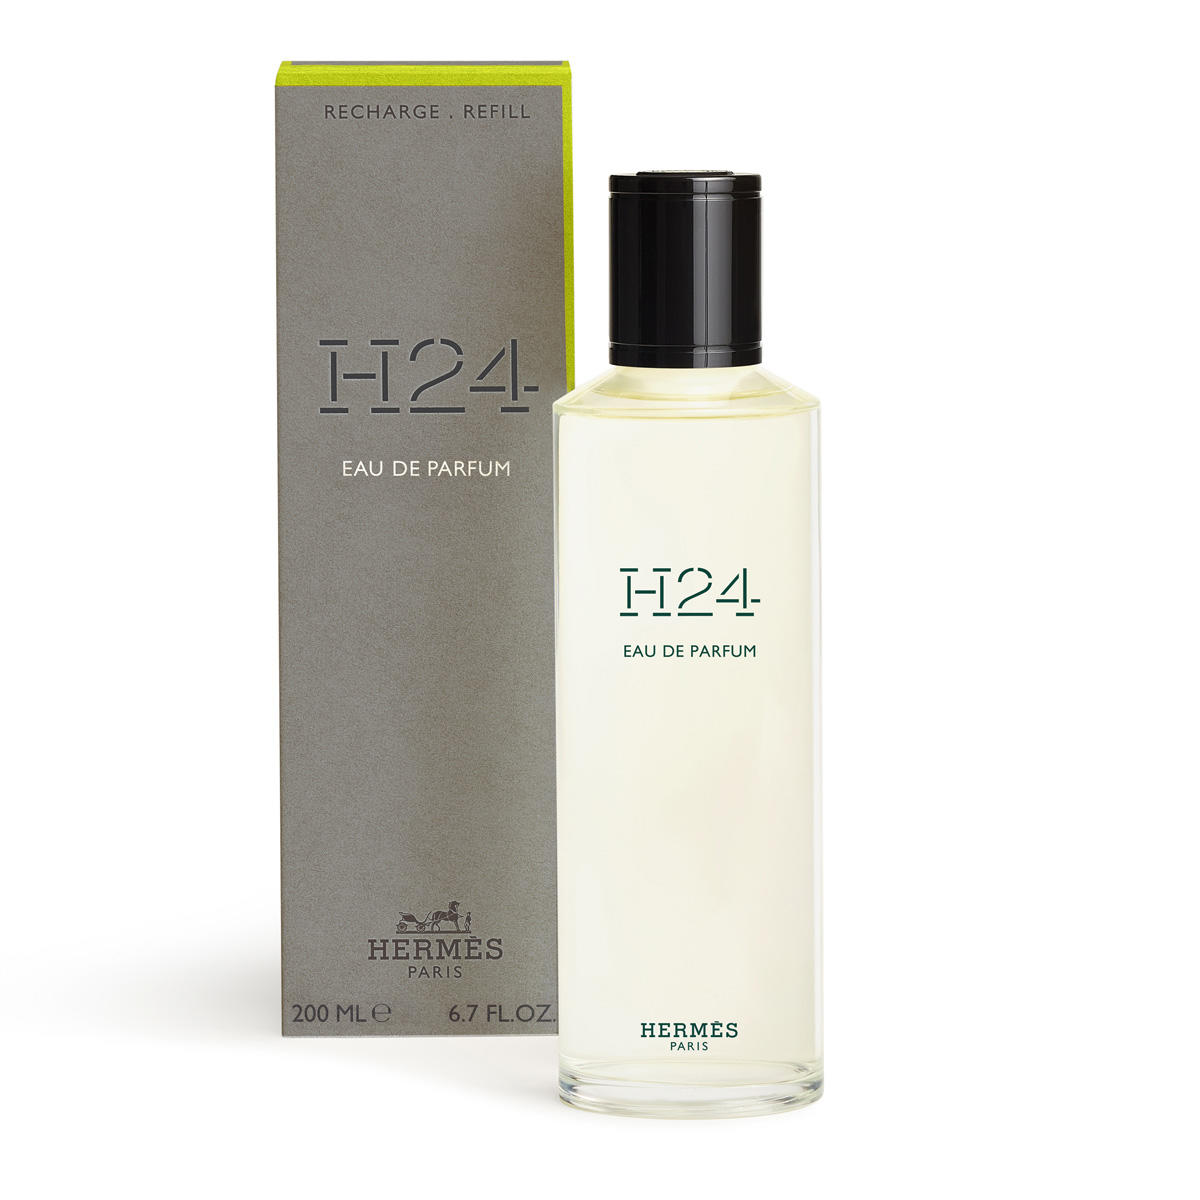 HERMÈS H24 Eau de Parfum Recharge 200 ml - 2